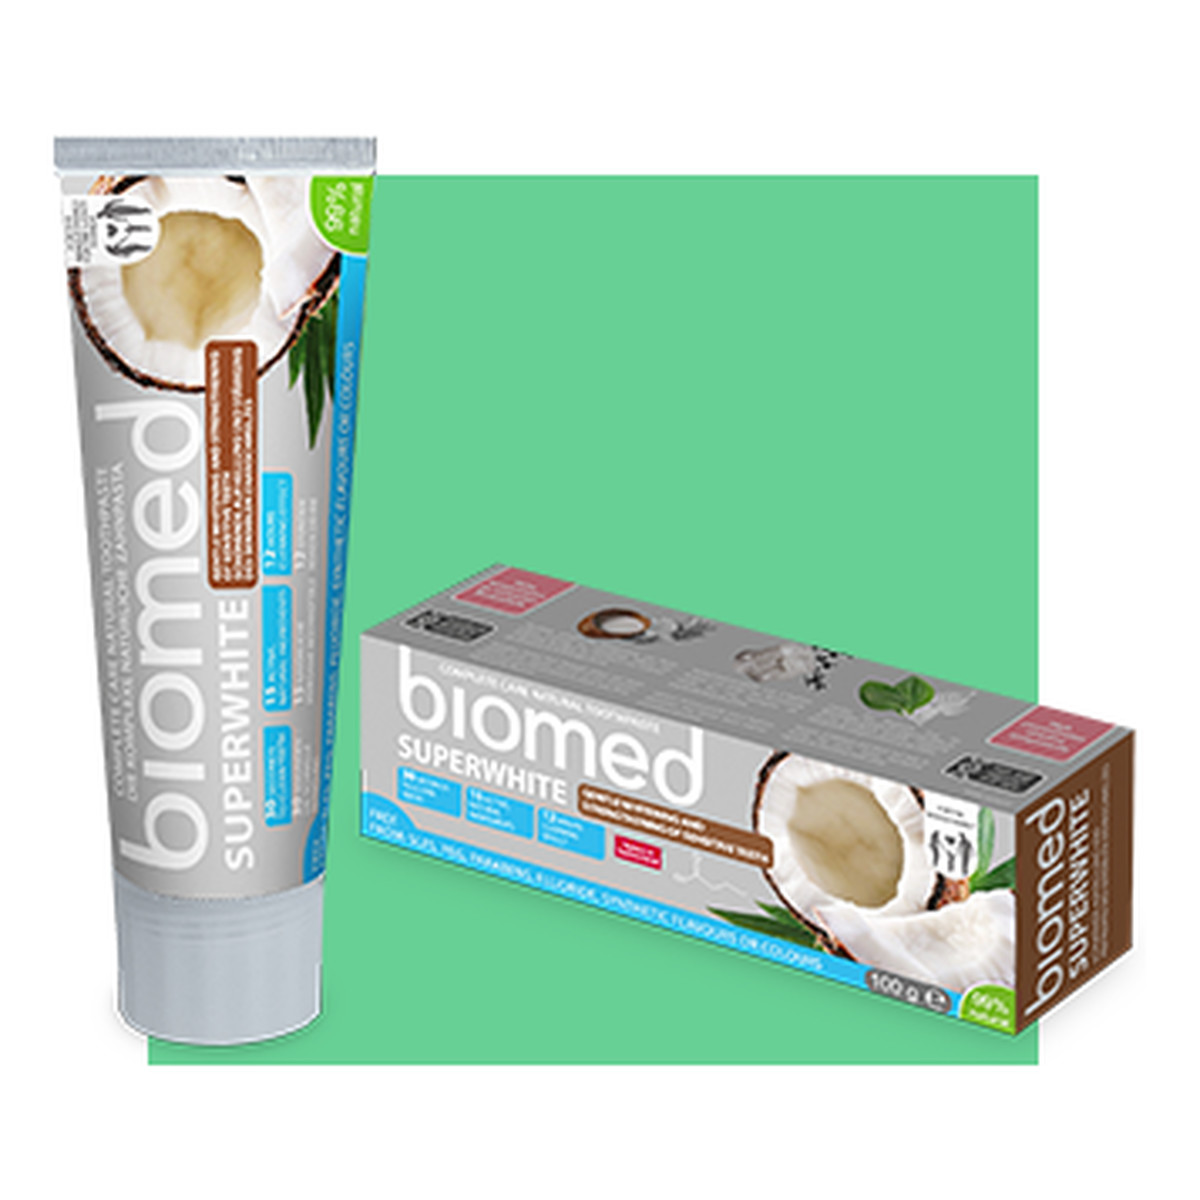 Biomed Biomed Super White Biomed Superwhite Wybielająca Pasta Do Zębów Do Remineralizacji i Wzmocnienia Szkliwa 100g